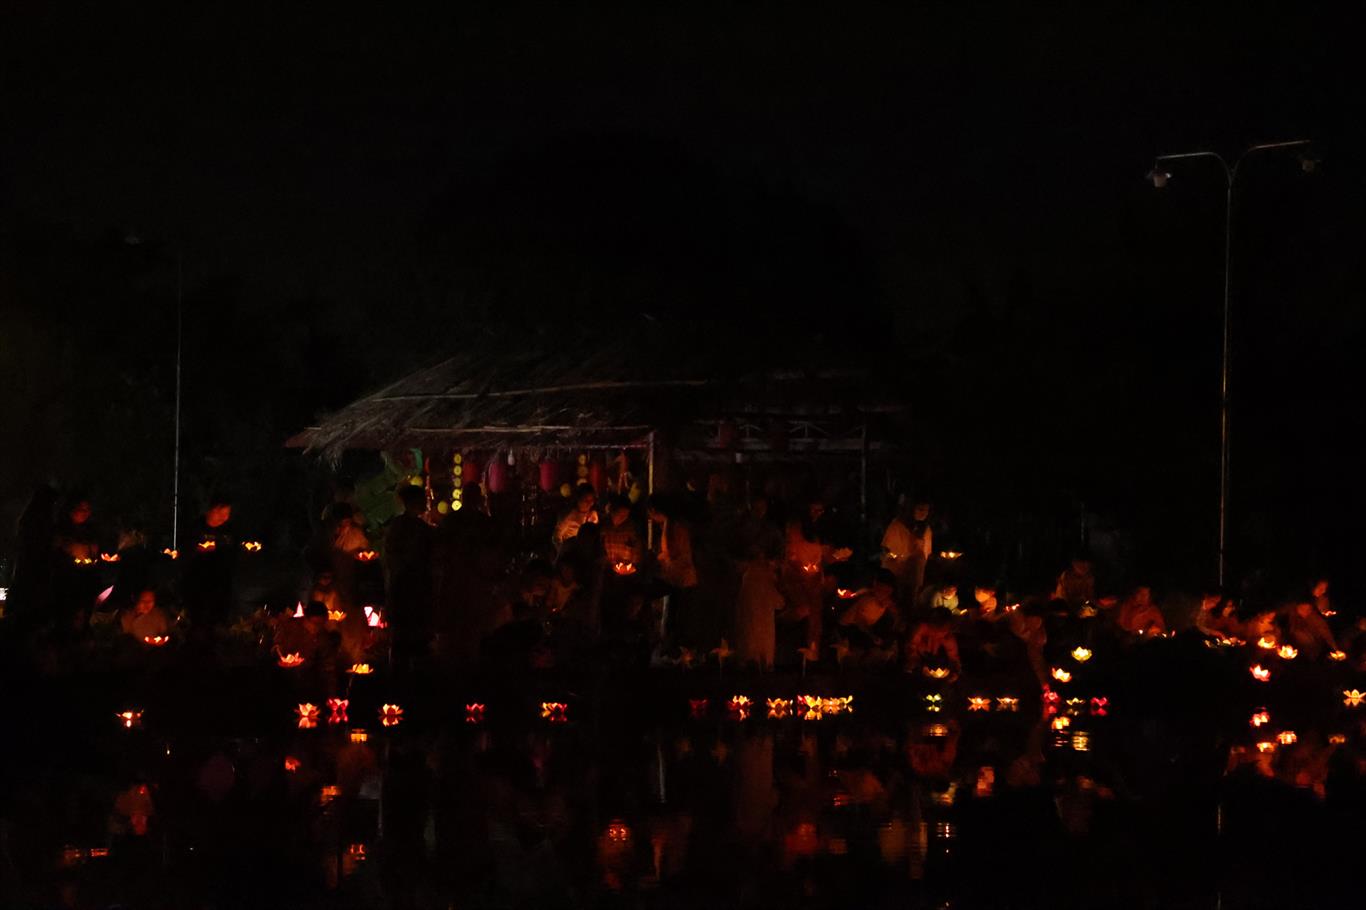 Khai mạc pháp hội Dược Sư và đại lễ cầu an đầu năm tại chùa Ân Thọ